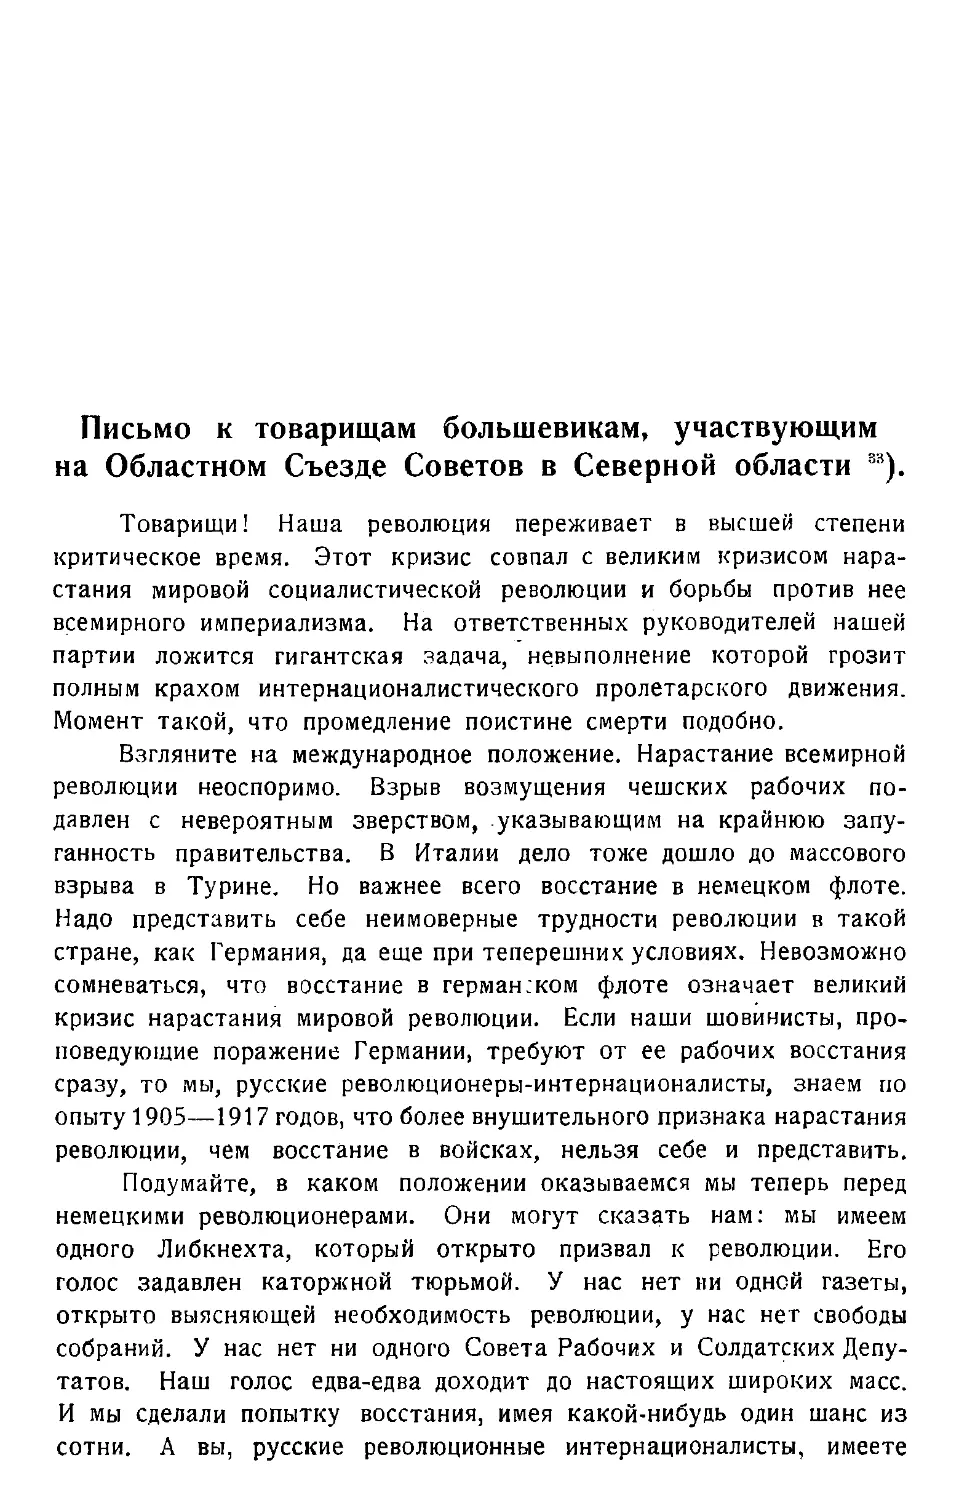 Письмо к товарищам большевикам, участвующим на Областном Съезде Советов в Северной области.